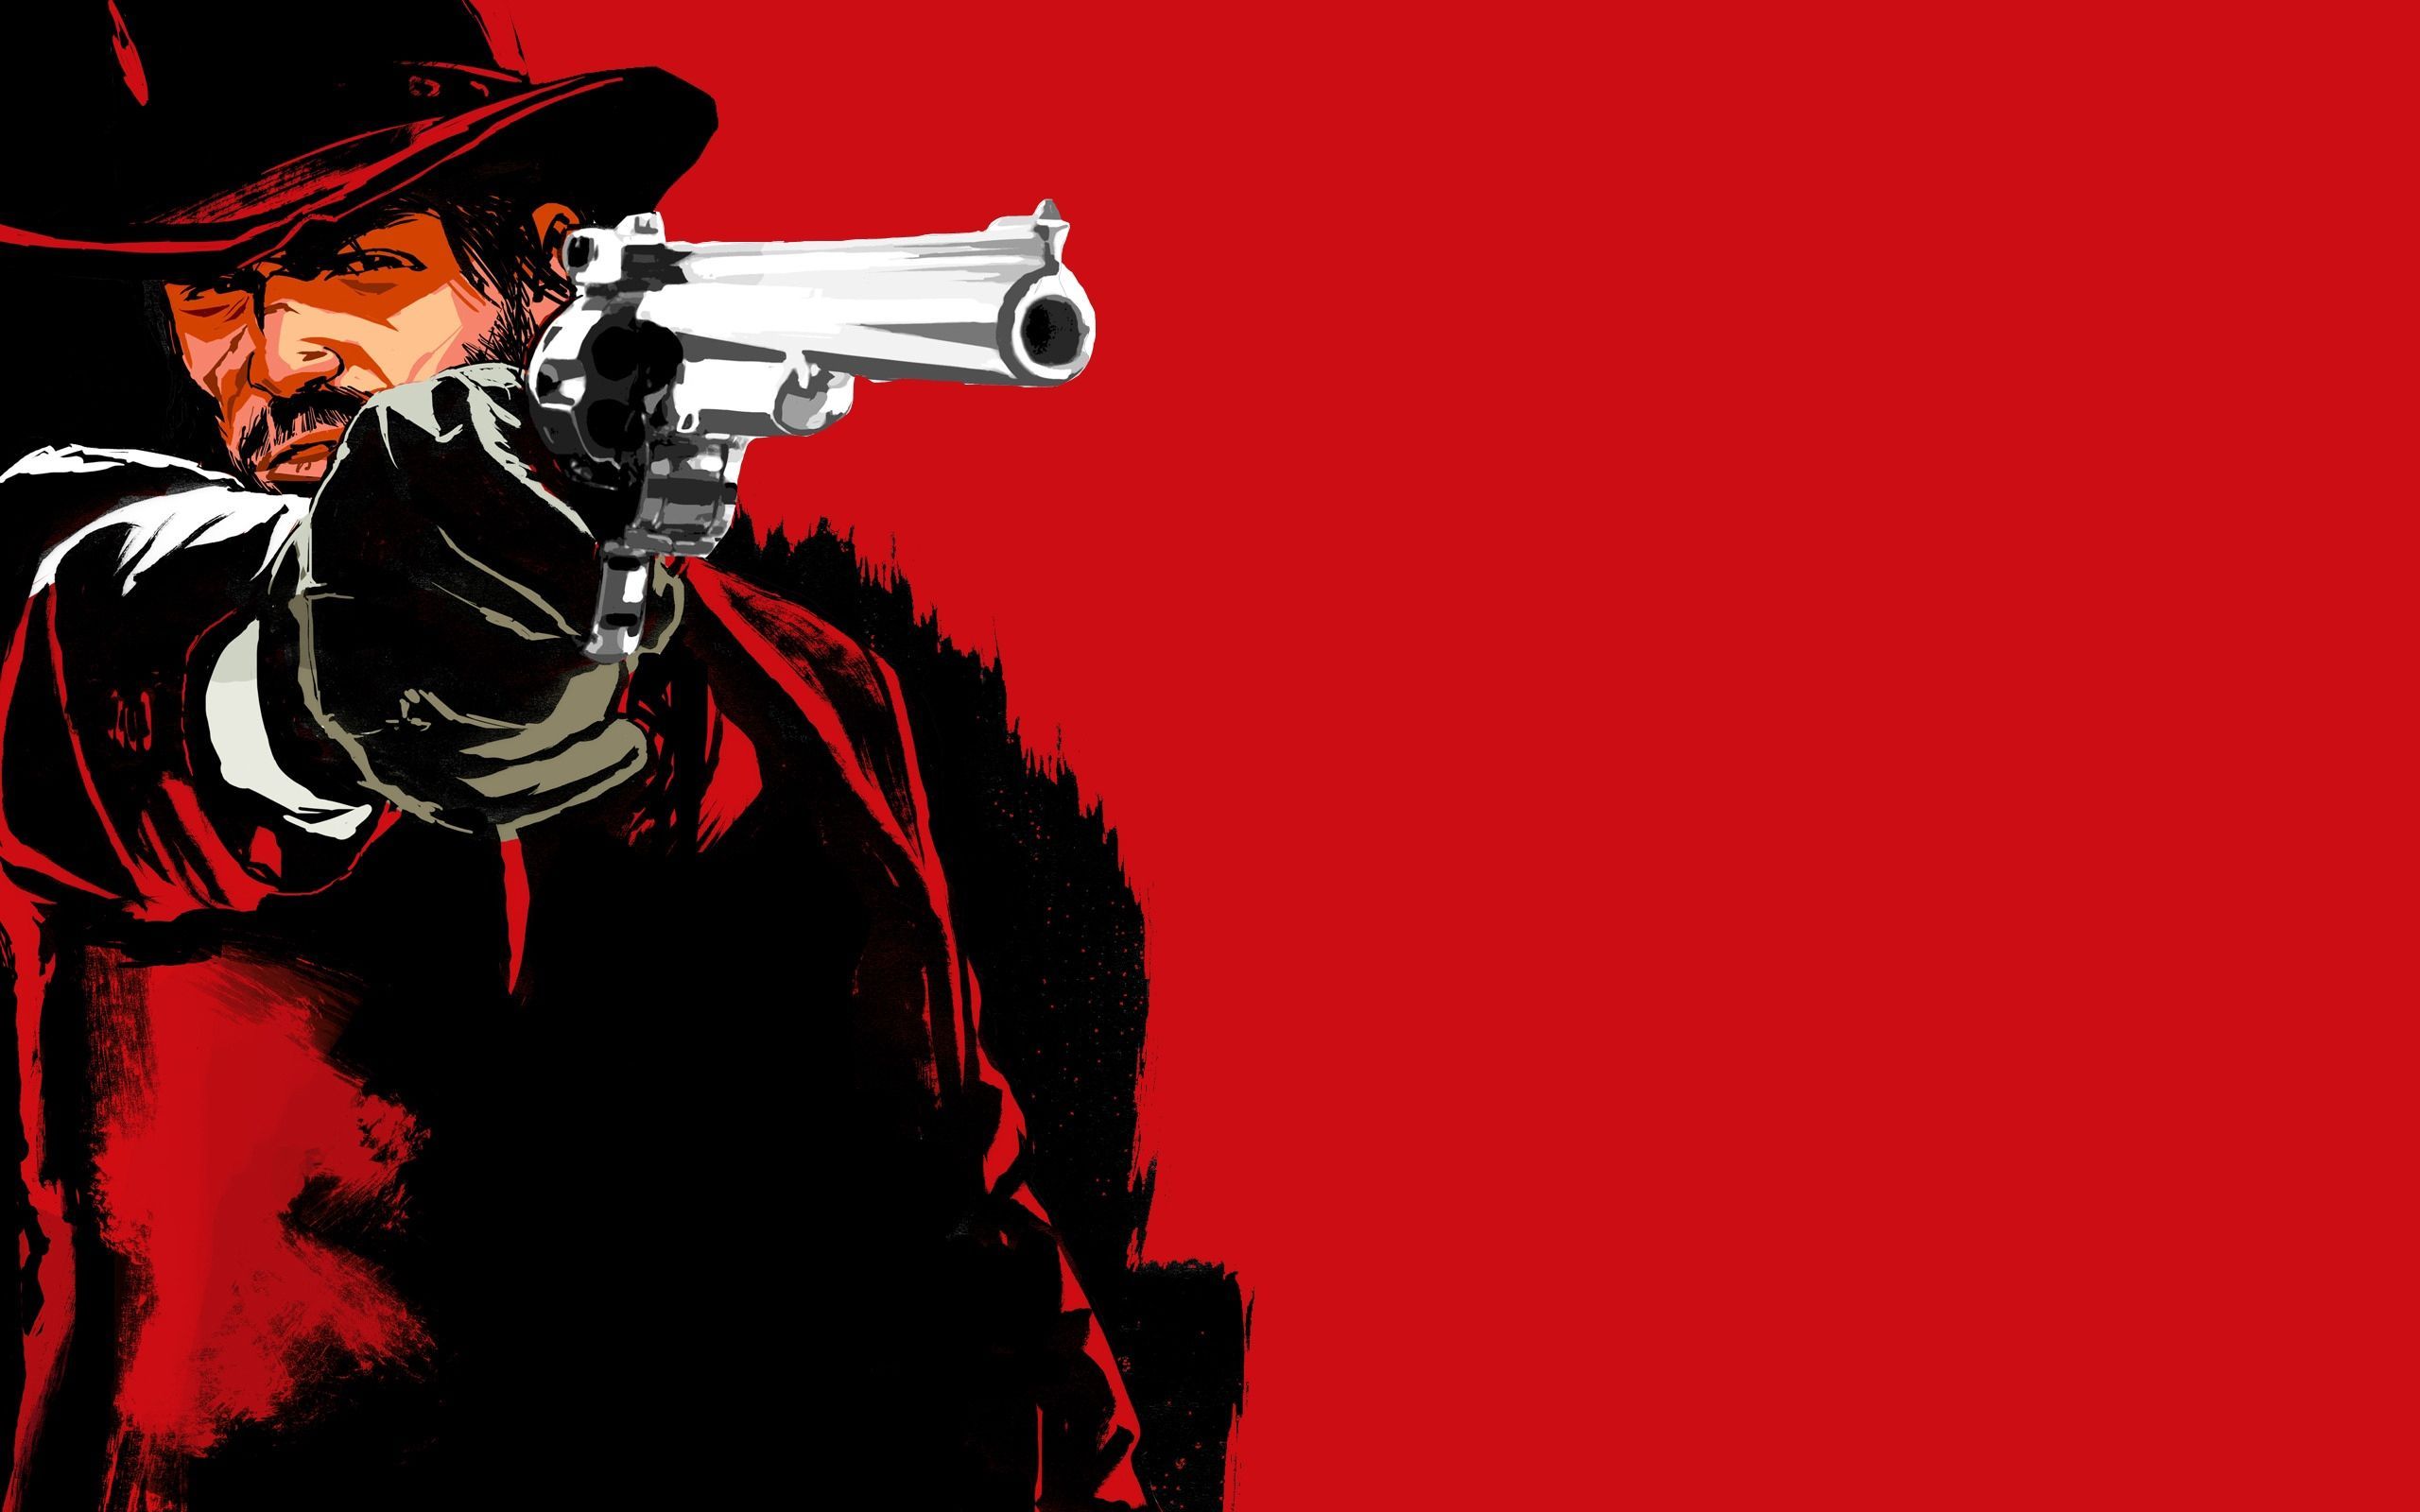 Red Dead Redemption Gun Wallpaper .wallpaperaccess.com